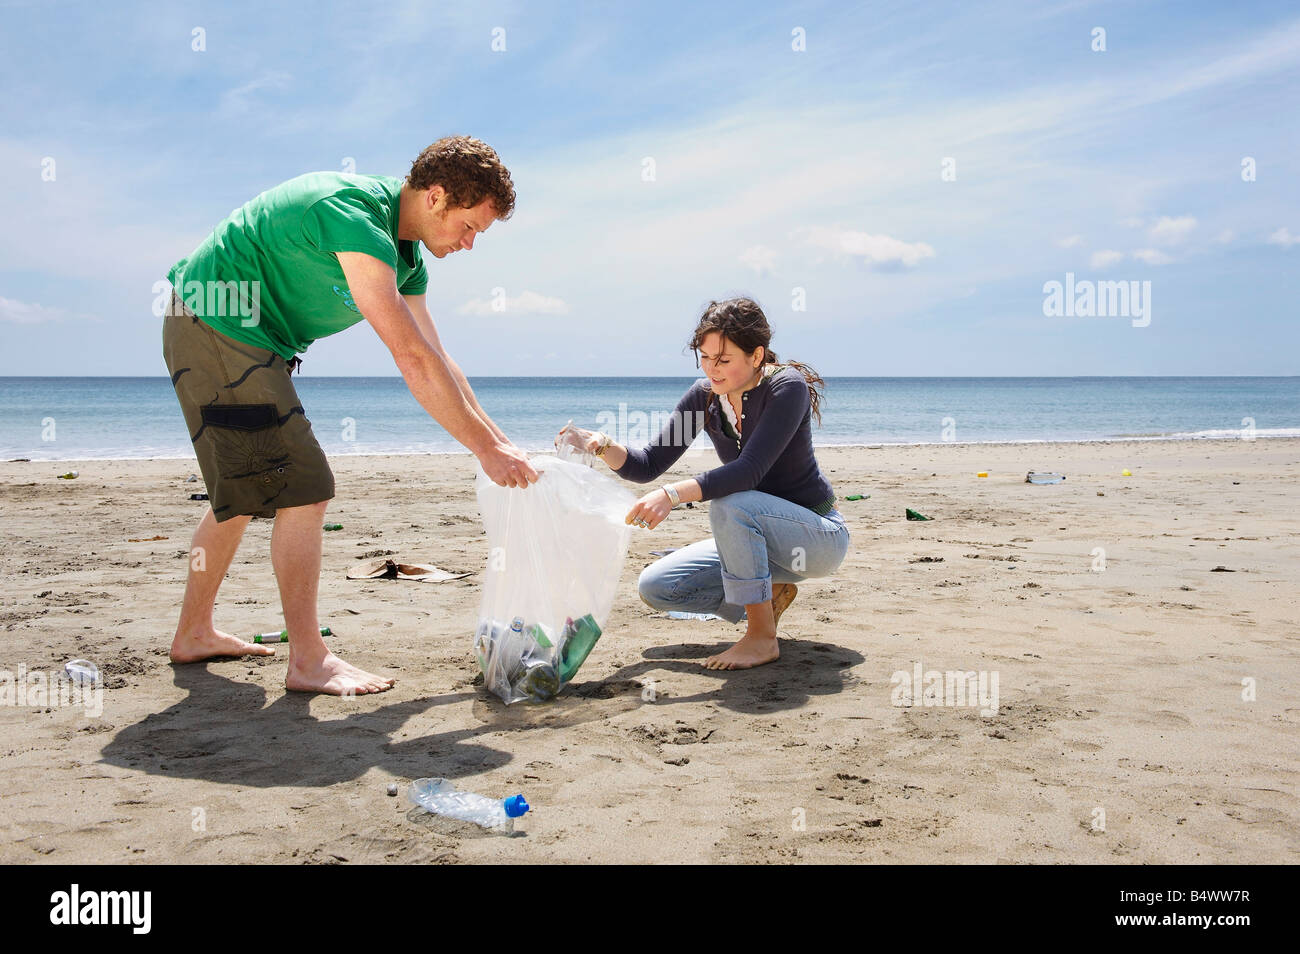 La collecte des déchets jeune couple on beach Banque D'Images